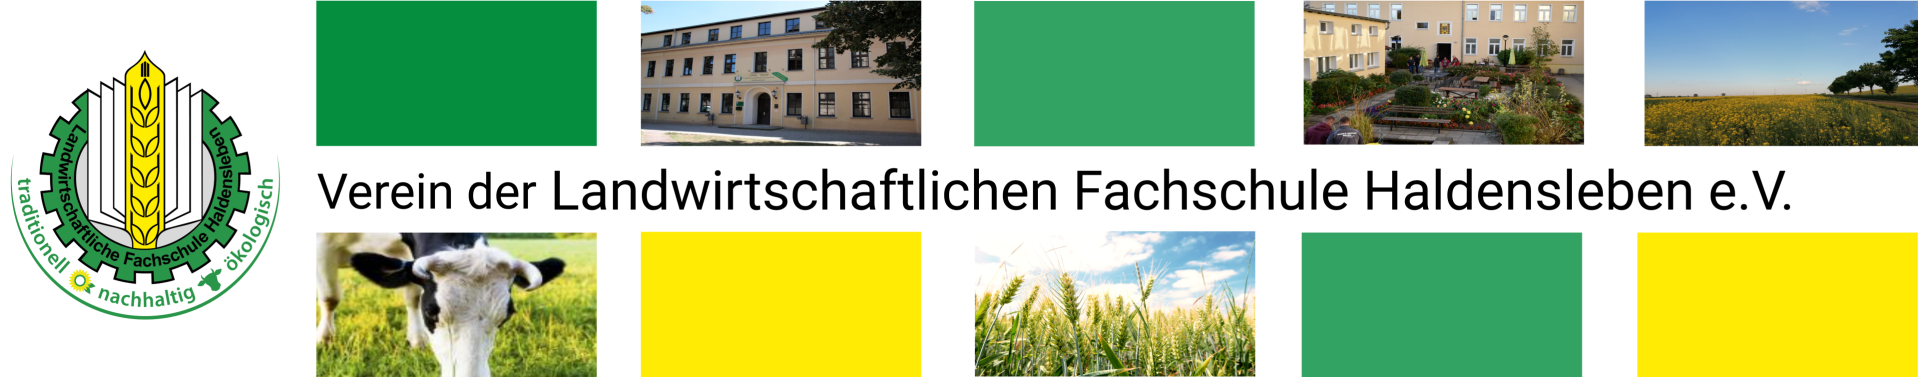 Fachschule für Landwirtschaft an der Landesanstalt für Landwirtschaft und Gartenbau Sachsen-Anhalt (LLG)